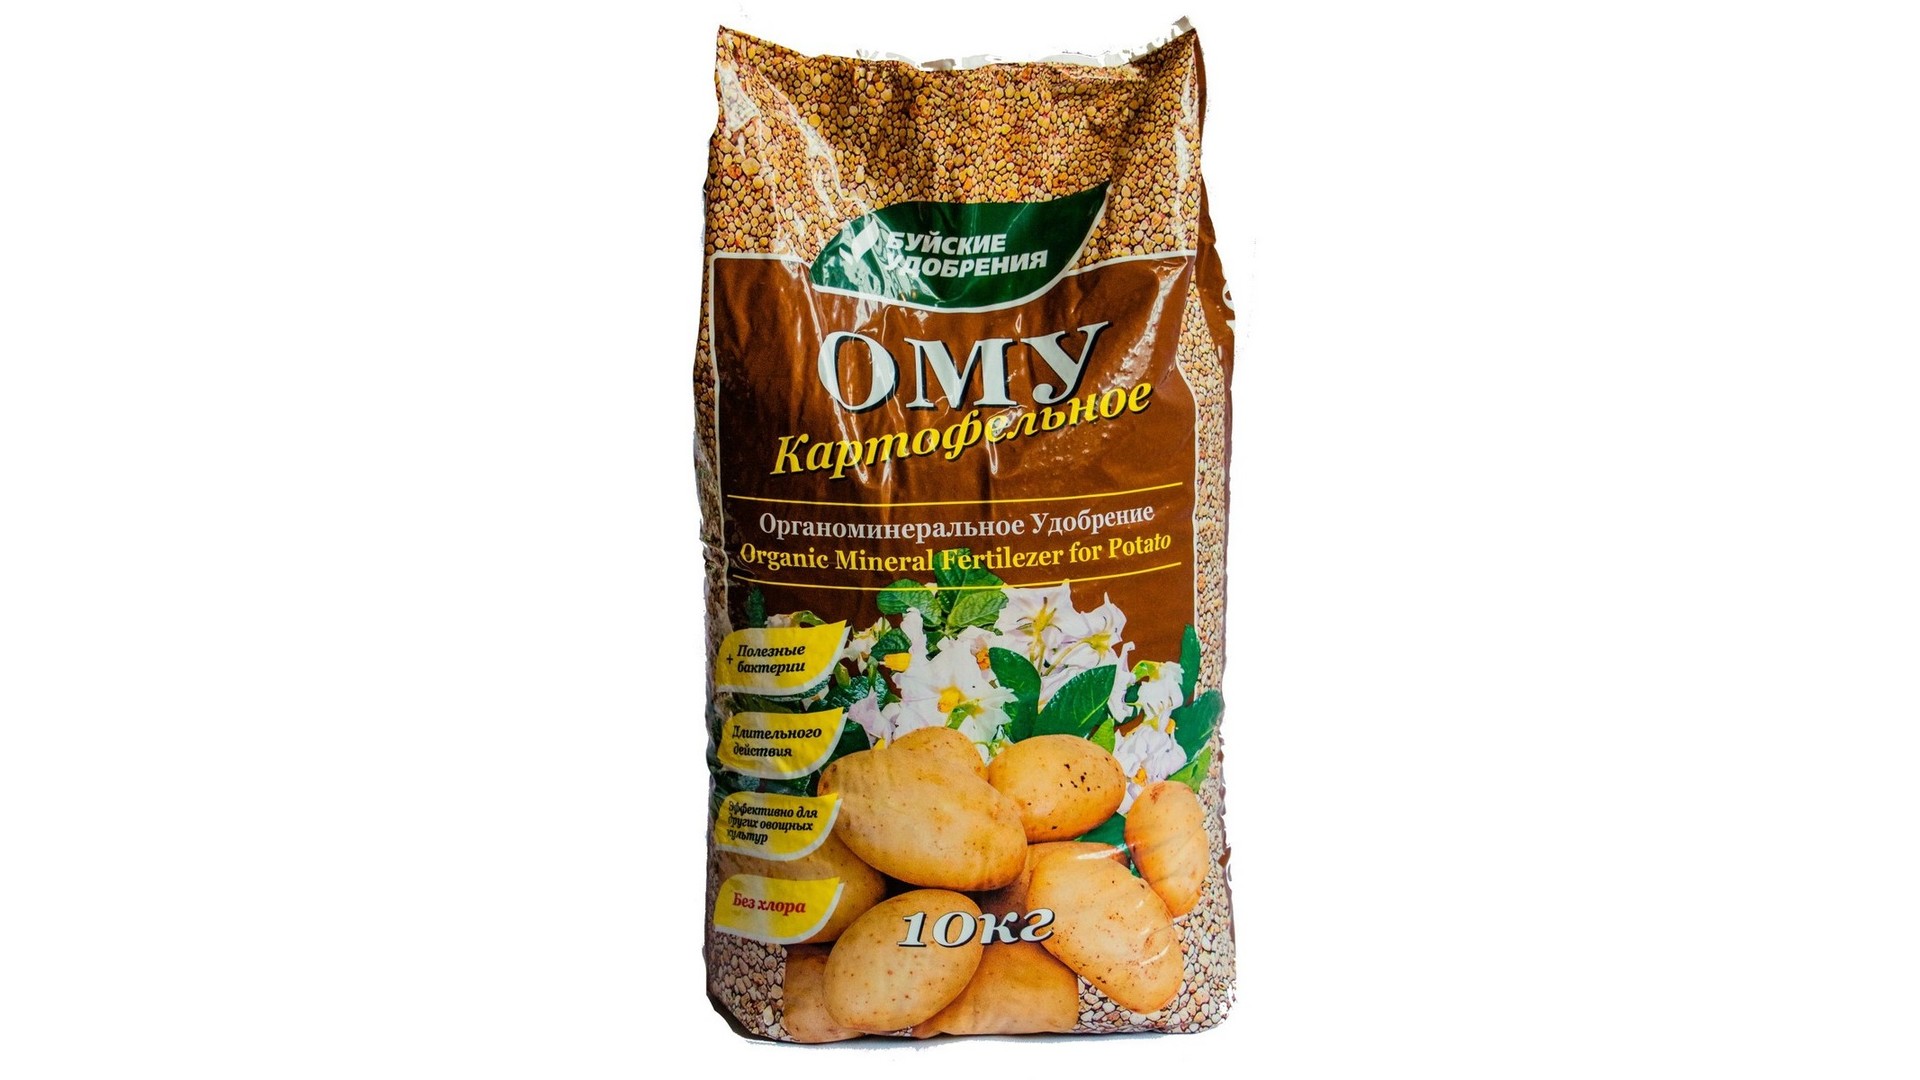 Органоминеральное удобрение Буйские удобрения ОМУ Картофельное 10 кг - характеристики и описание на Мегамаркет